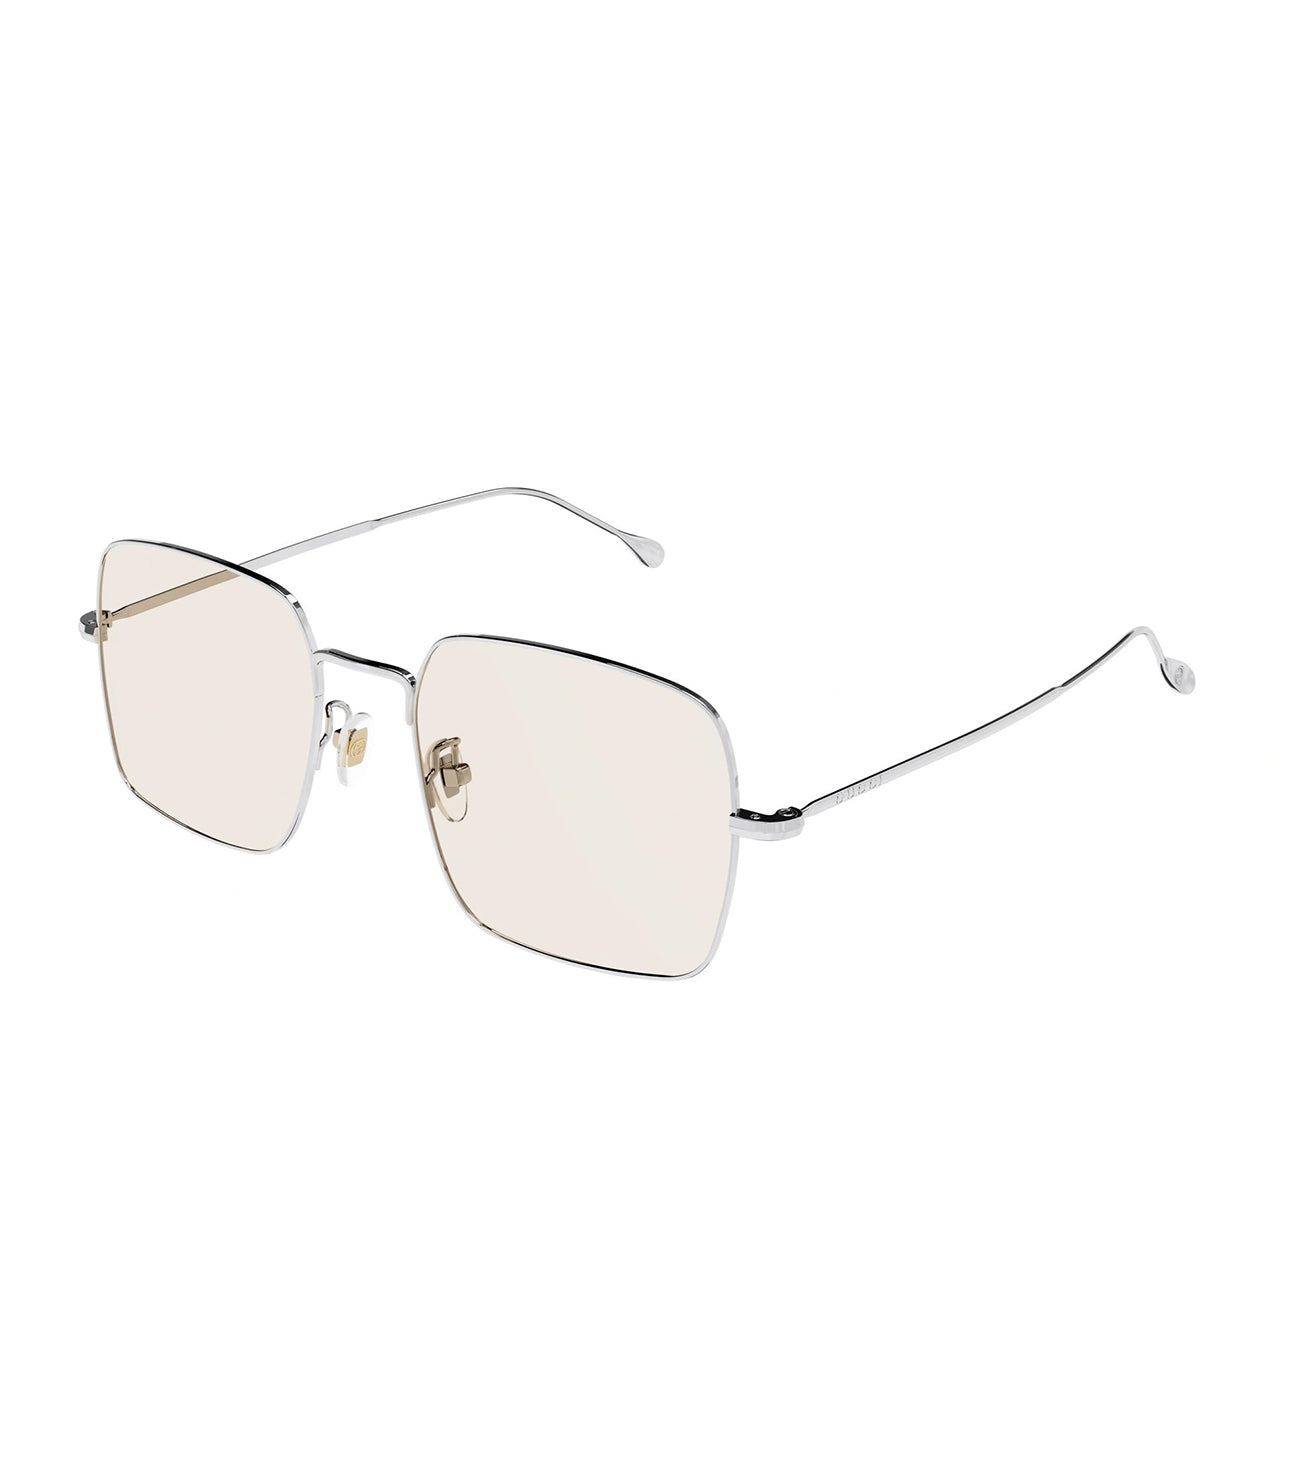 Gucci Men's Silver Square Sunglasses